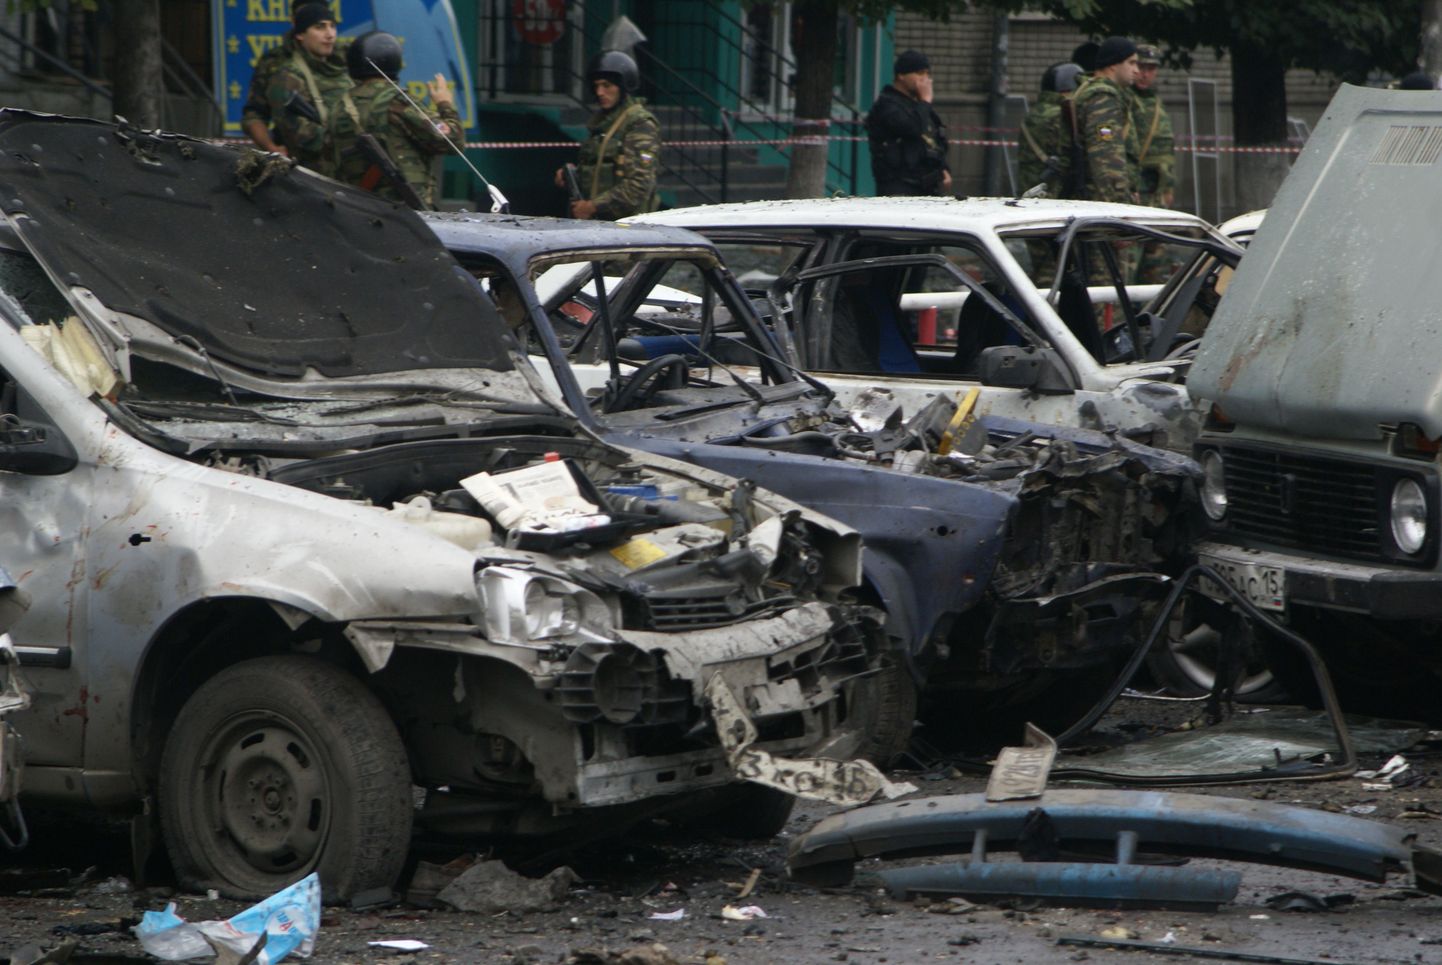 Kannatada said mitmed Vladikavkazi turu juures plahvatuse ajal seisnud autod.